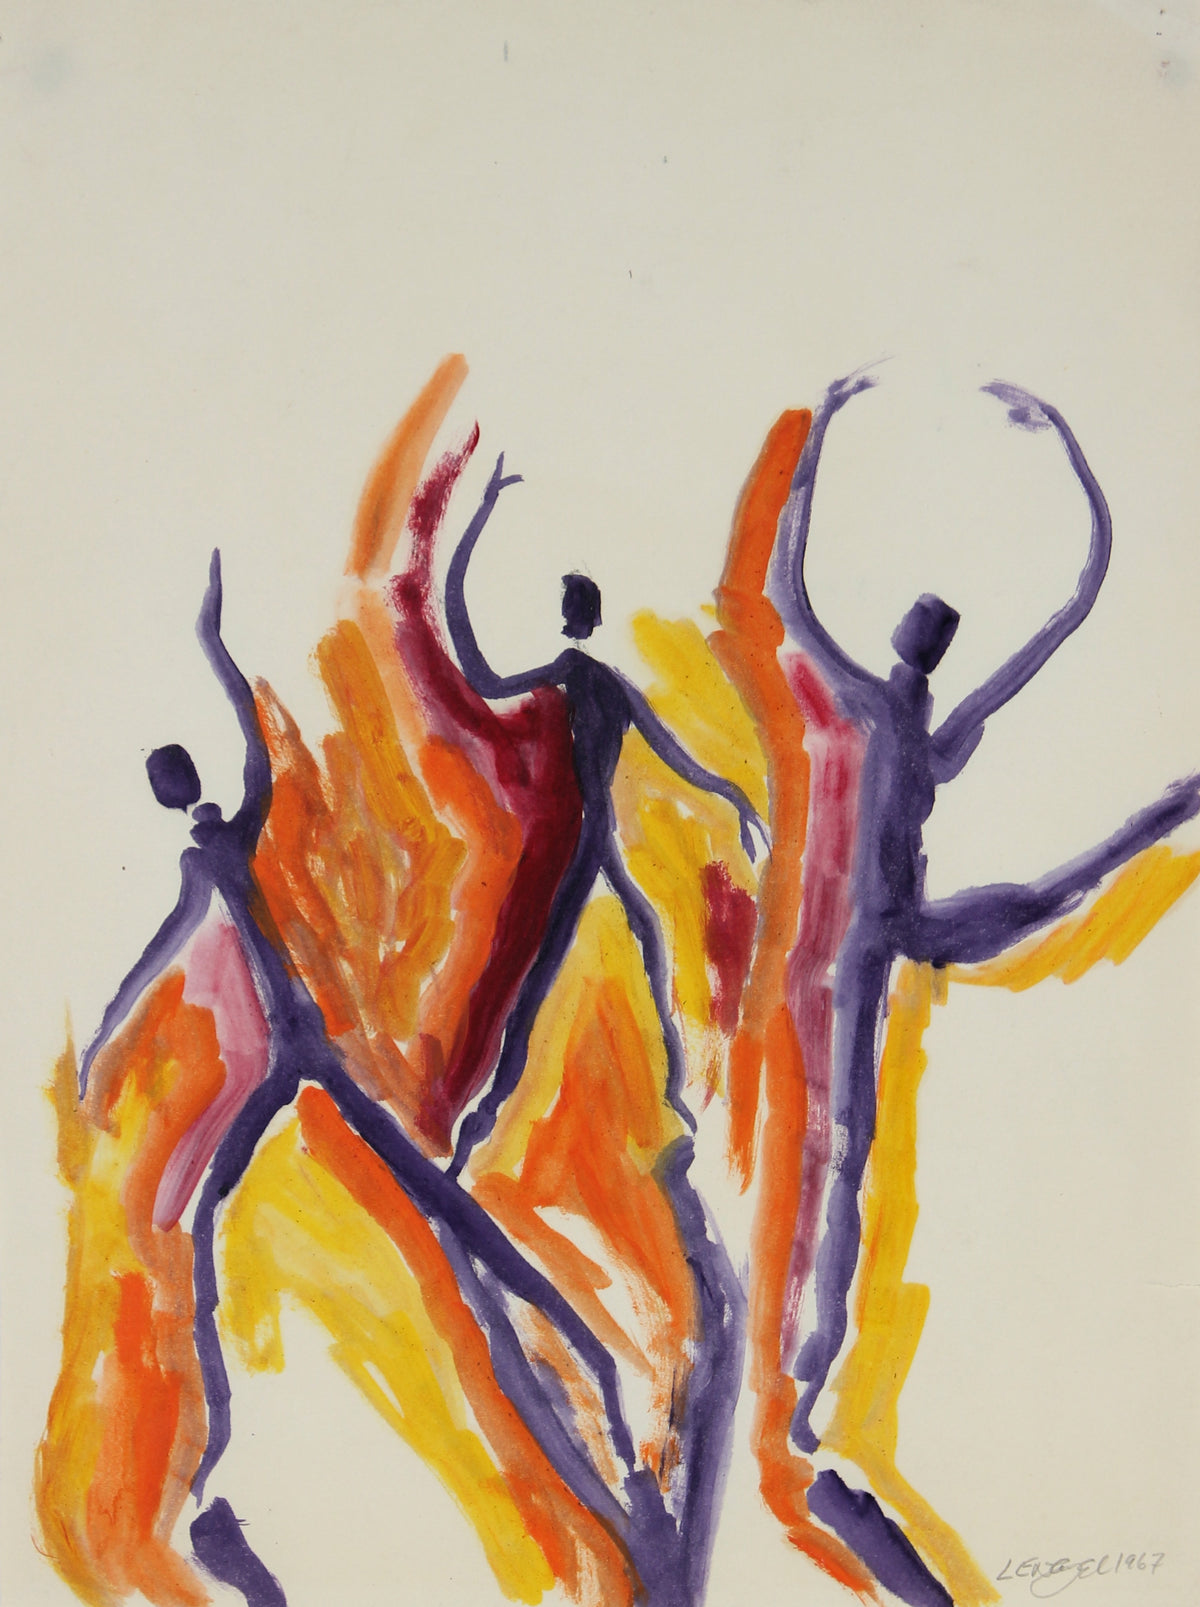 Colored Abstracted Figures &lt;br&gt;1967 Oil on Paper&lt;br&gt;&lt;br&gt;#68787